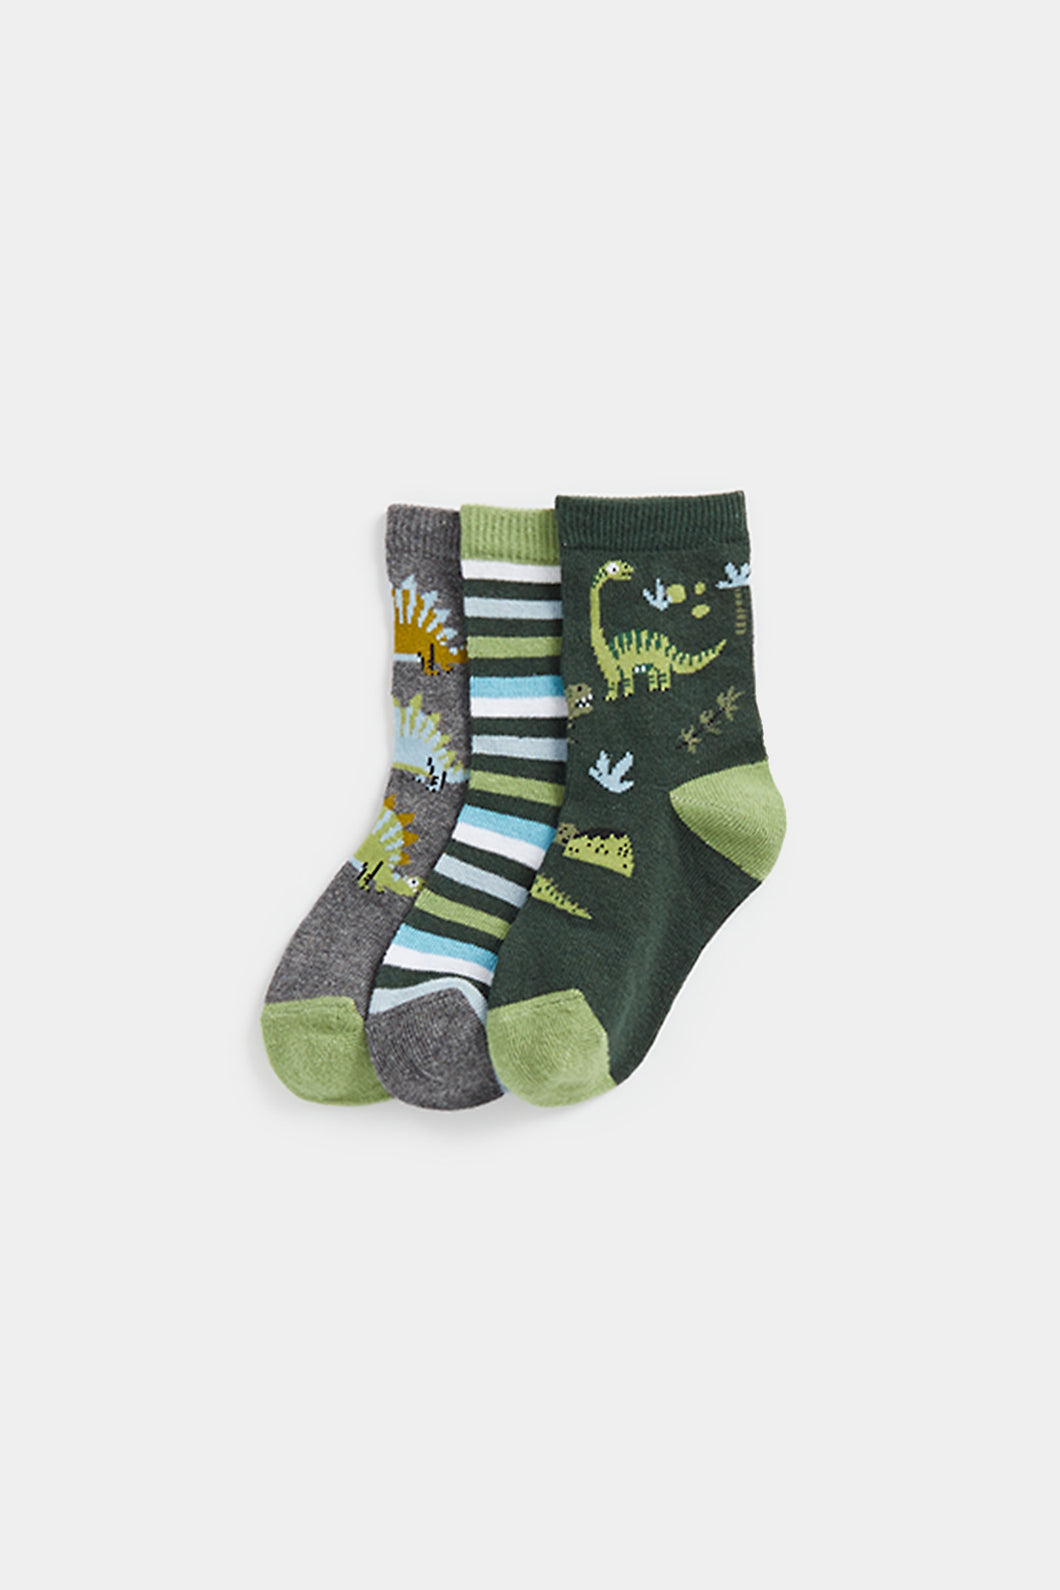 Mothercare Dinosaur Socks - 3 Pack